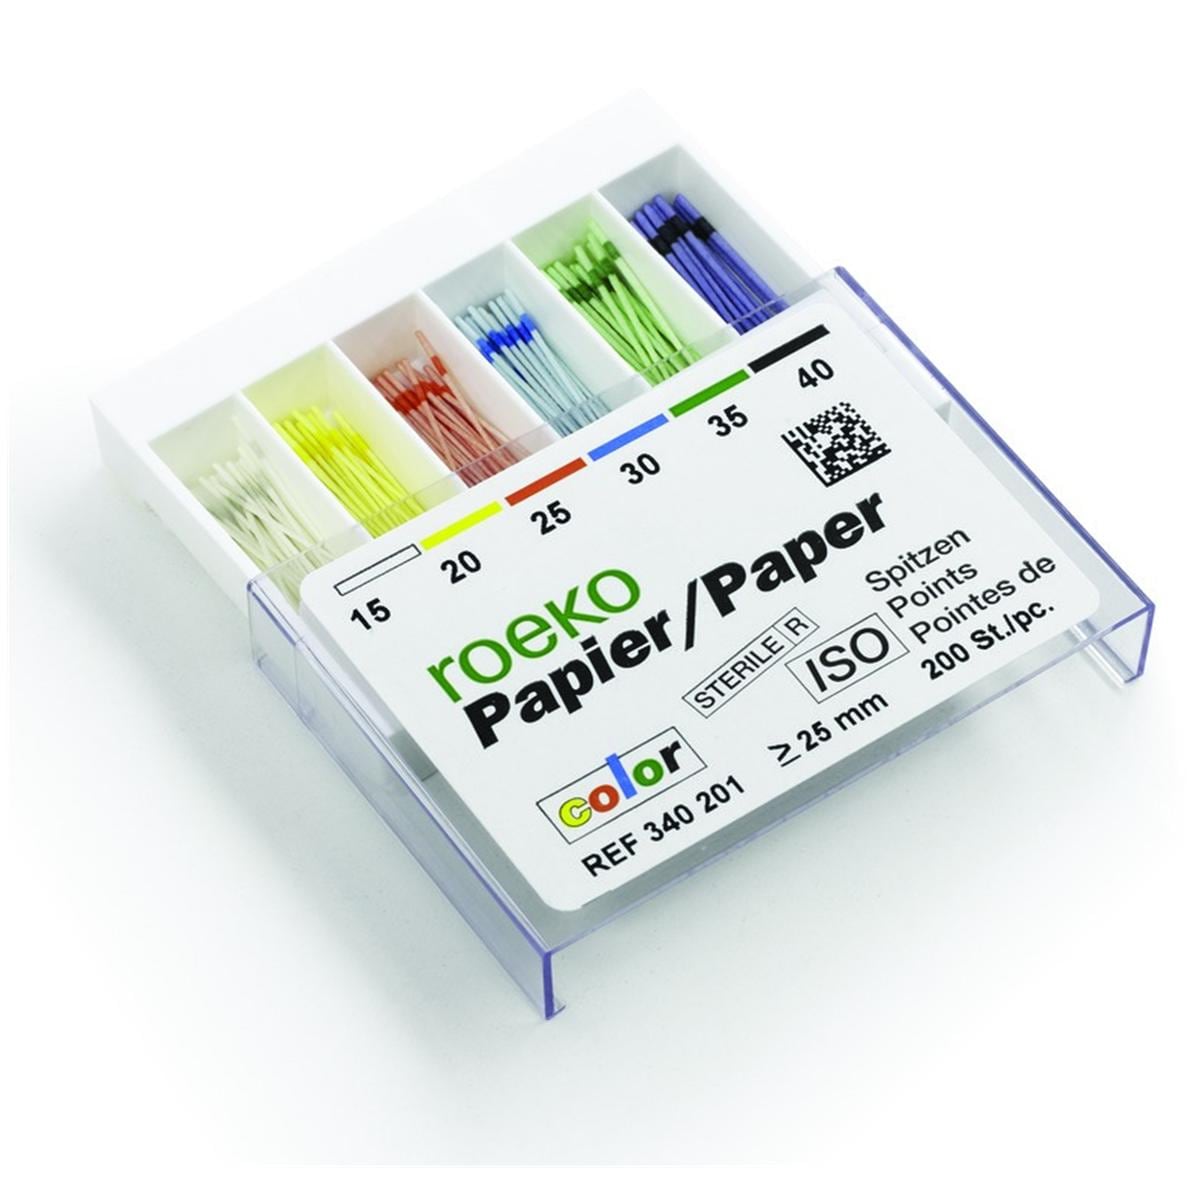 Pointes Papier Iso Color ROEKO - n 25 - Bote de 200